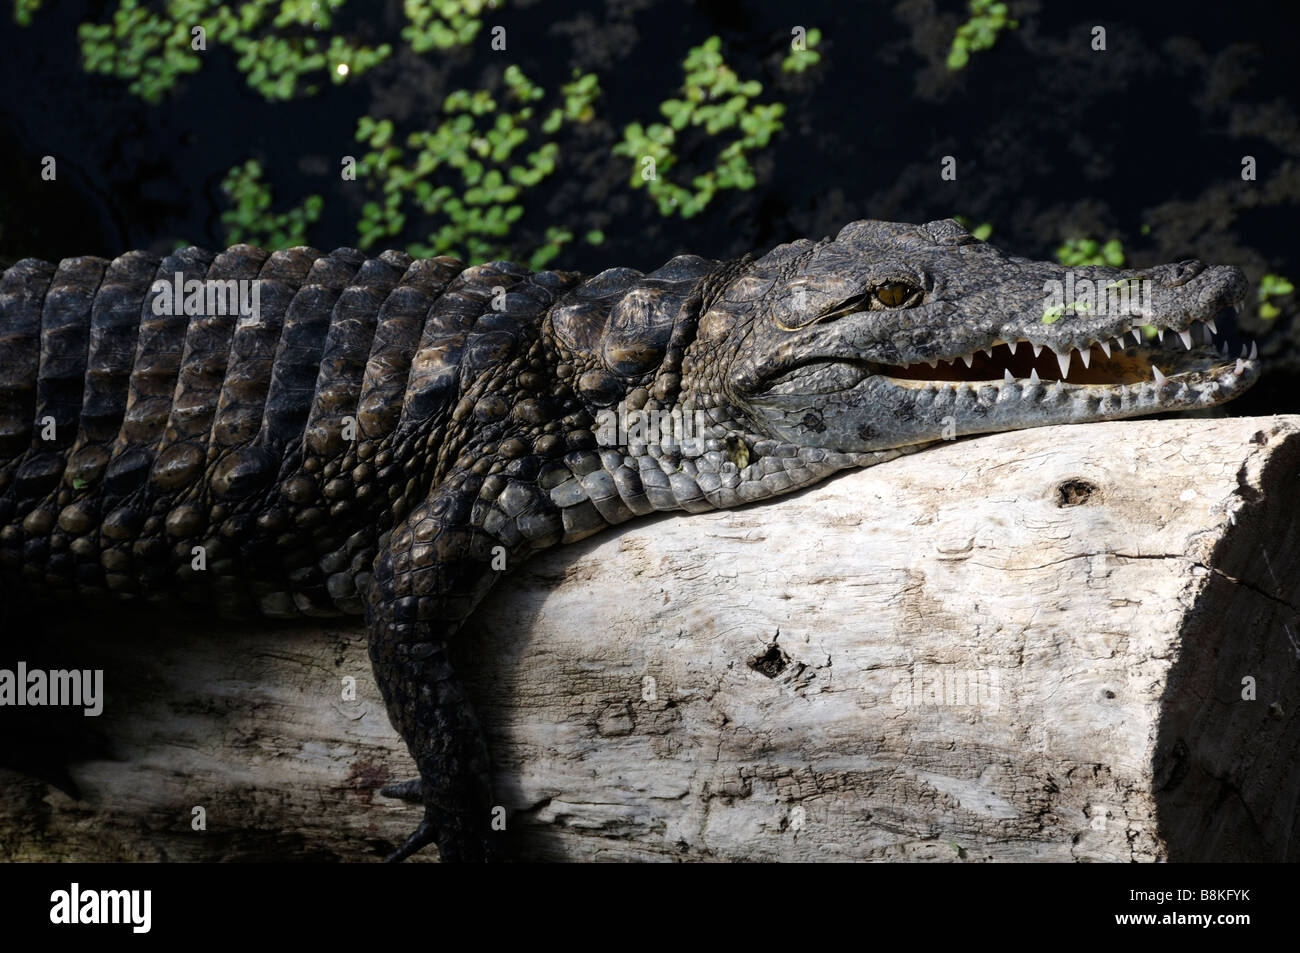 Stock photo of Nile crocodile in la planete des crocodiles centre at Civaux  in France Stock Photo - Alamy